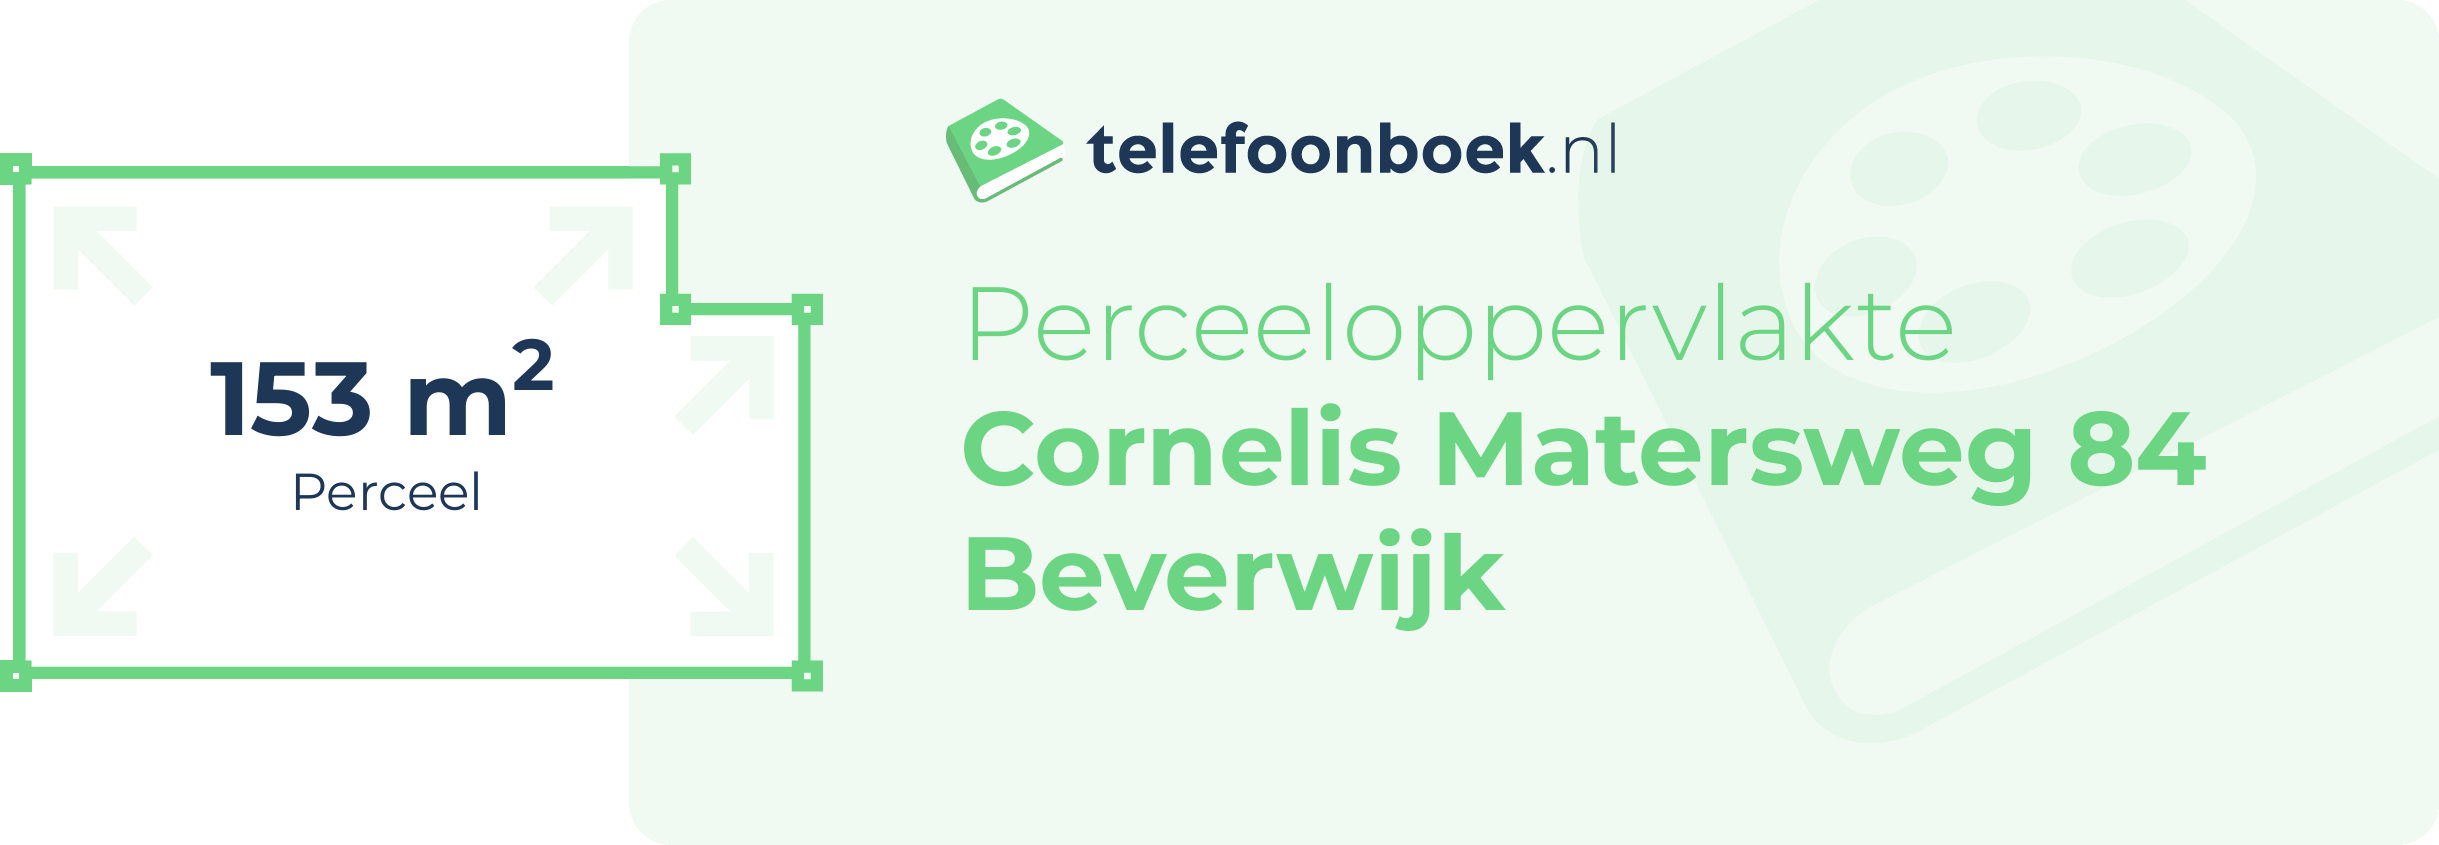 Perceeloppervlakte Cornelis Matersweg 84 Beverwijk